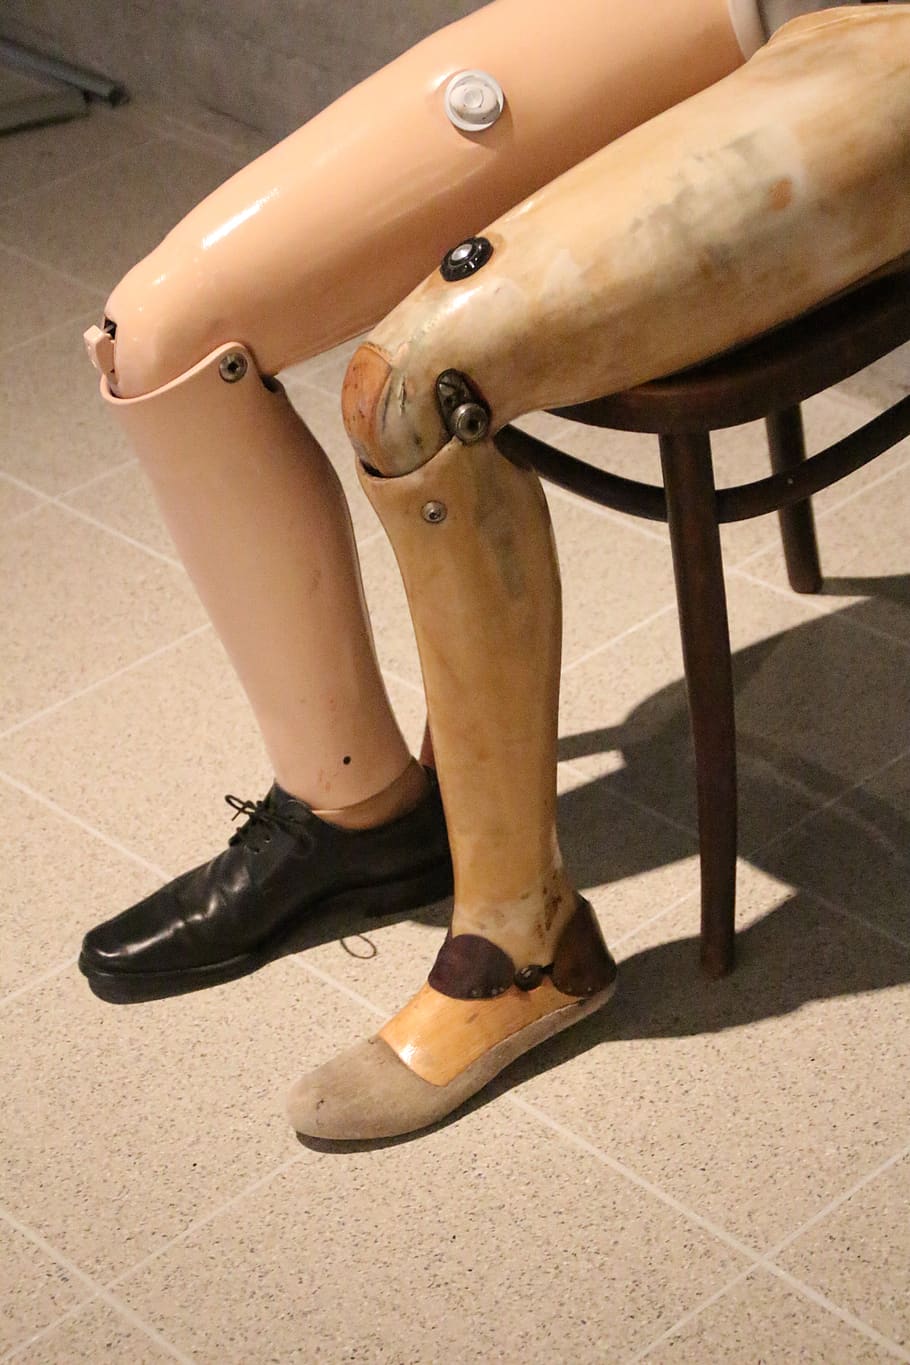 protético, membro artificial, perna, perna falsa, médico, lesão, membro, sapato, seção baixa, perna humana